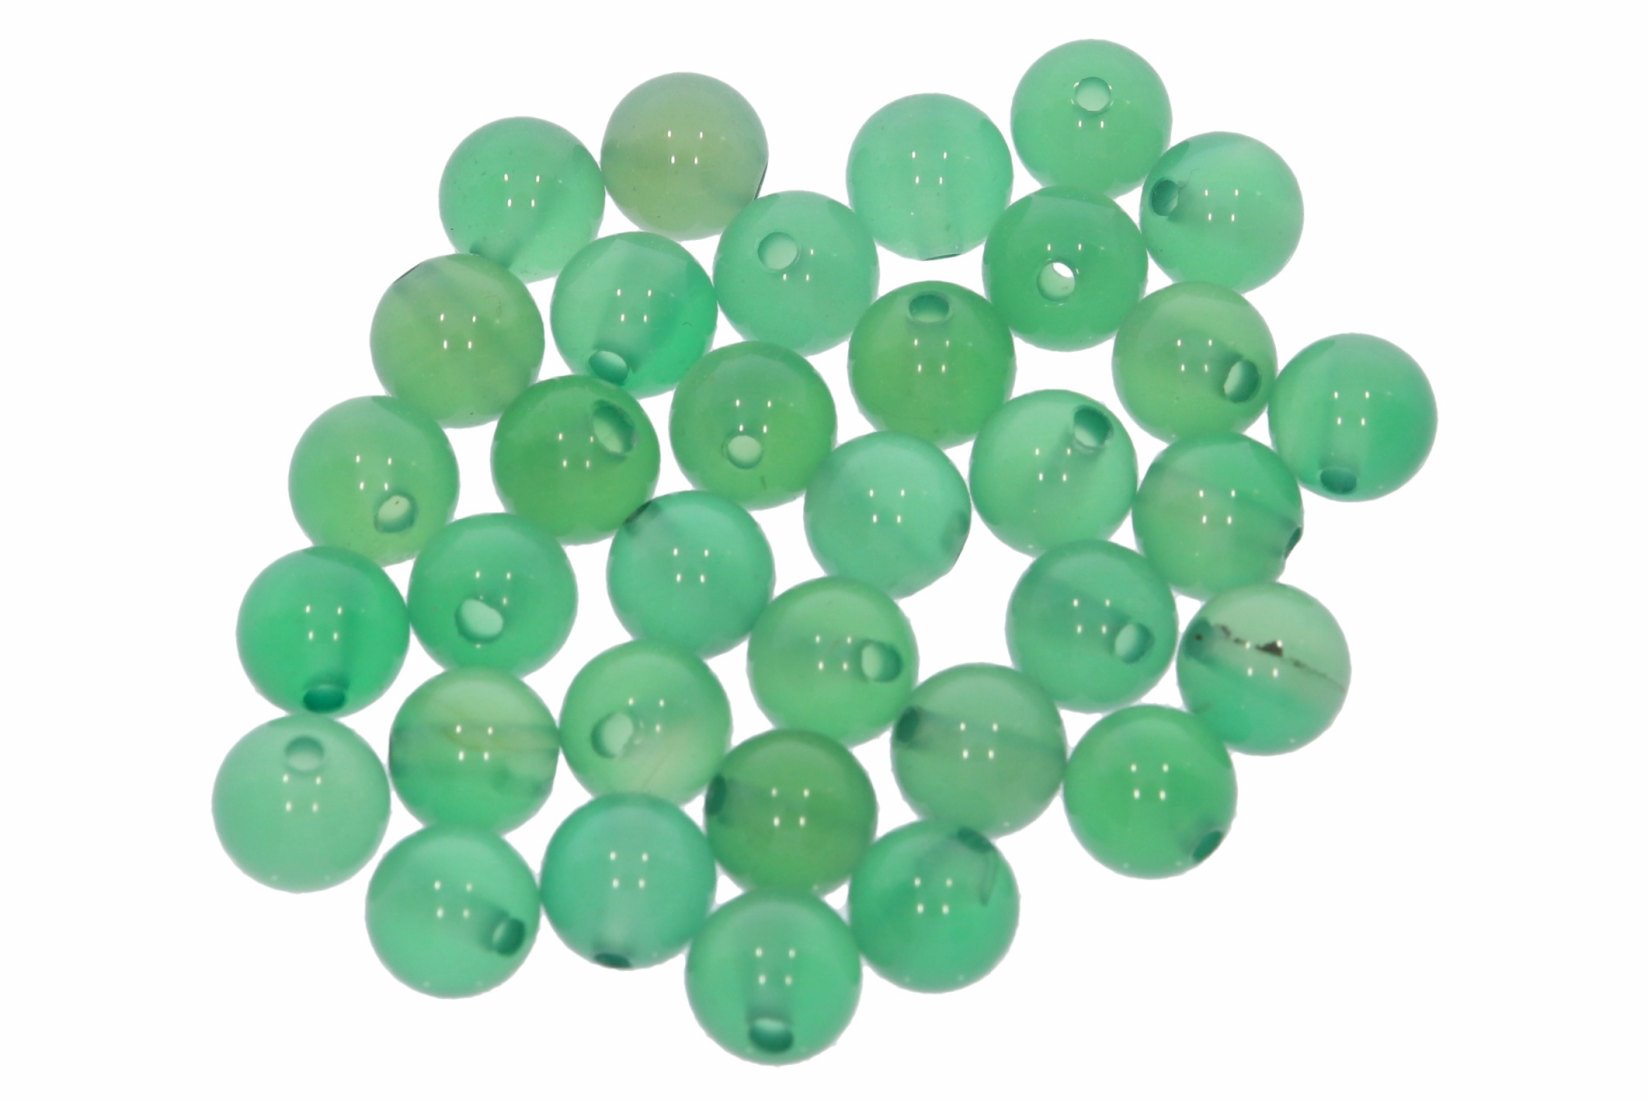 Achat grün einfarbig   6S134 - 6mm Edelstein Kugel 10 Stück